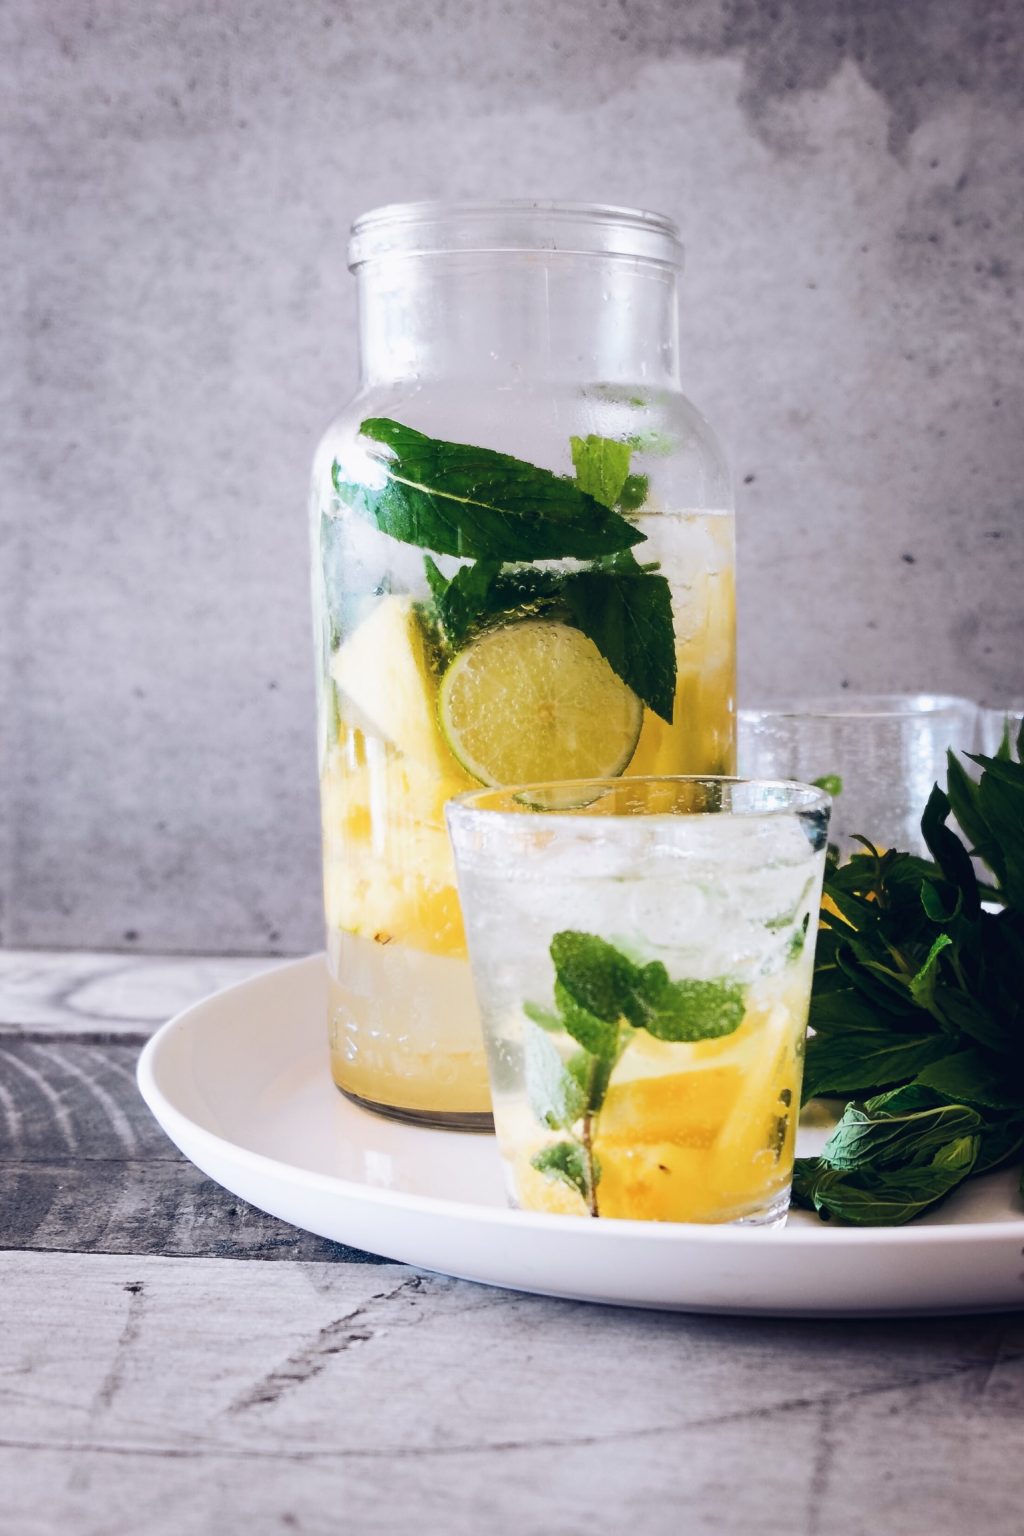 Польза от употребления воды с лимоном